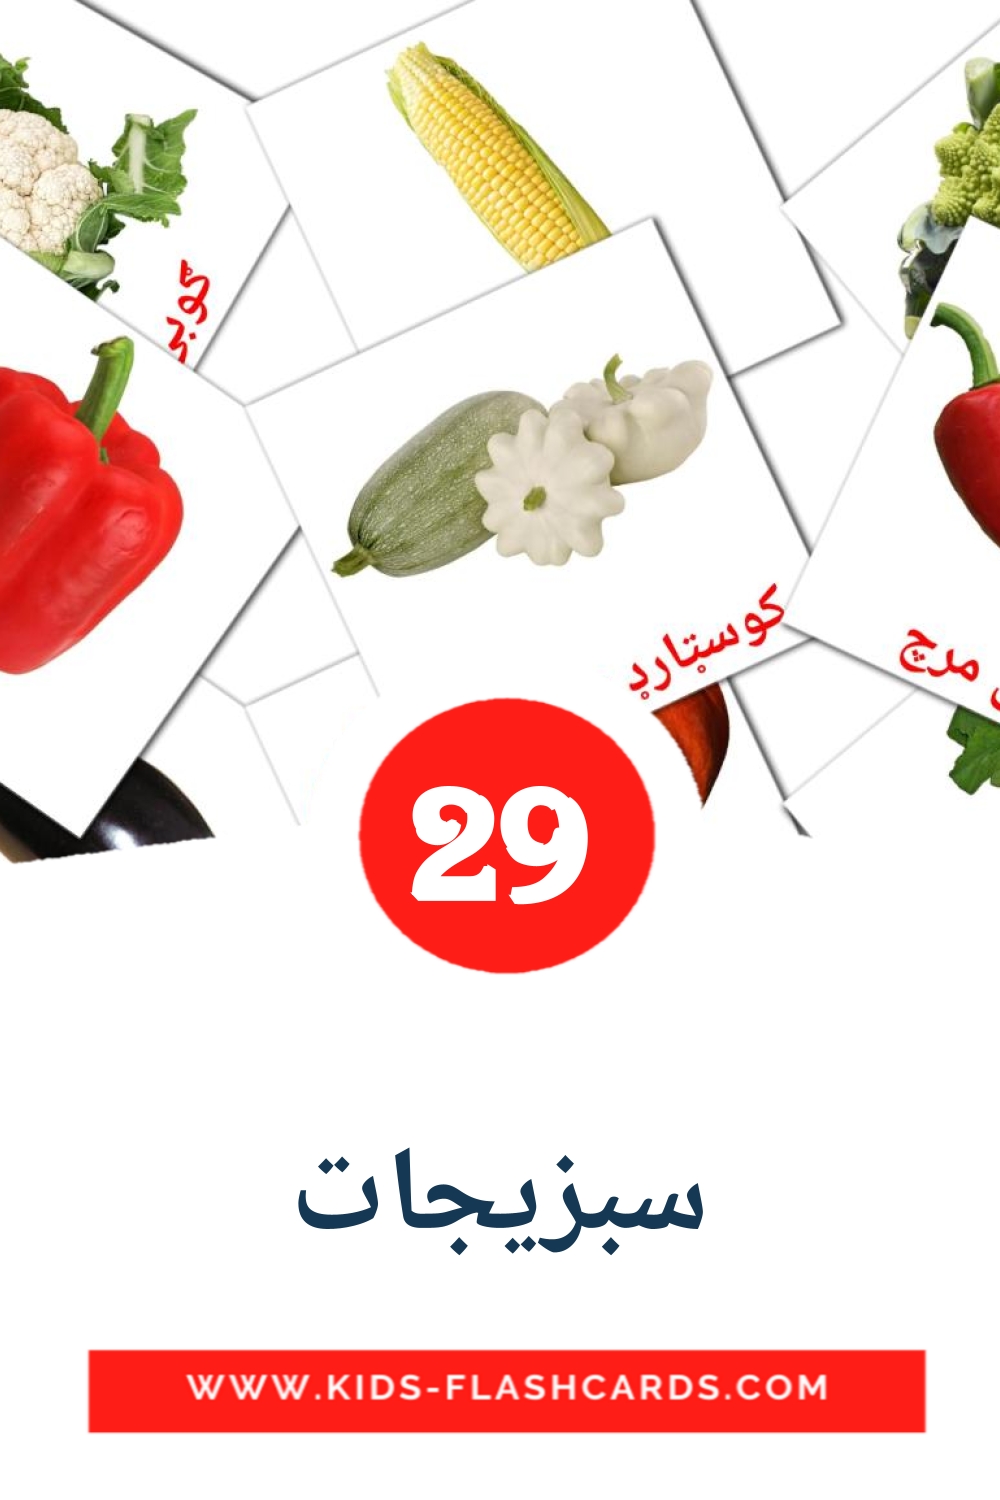 29 cartes illustrées de سبزیجات pour la maternelle en pashto